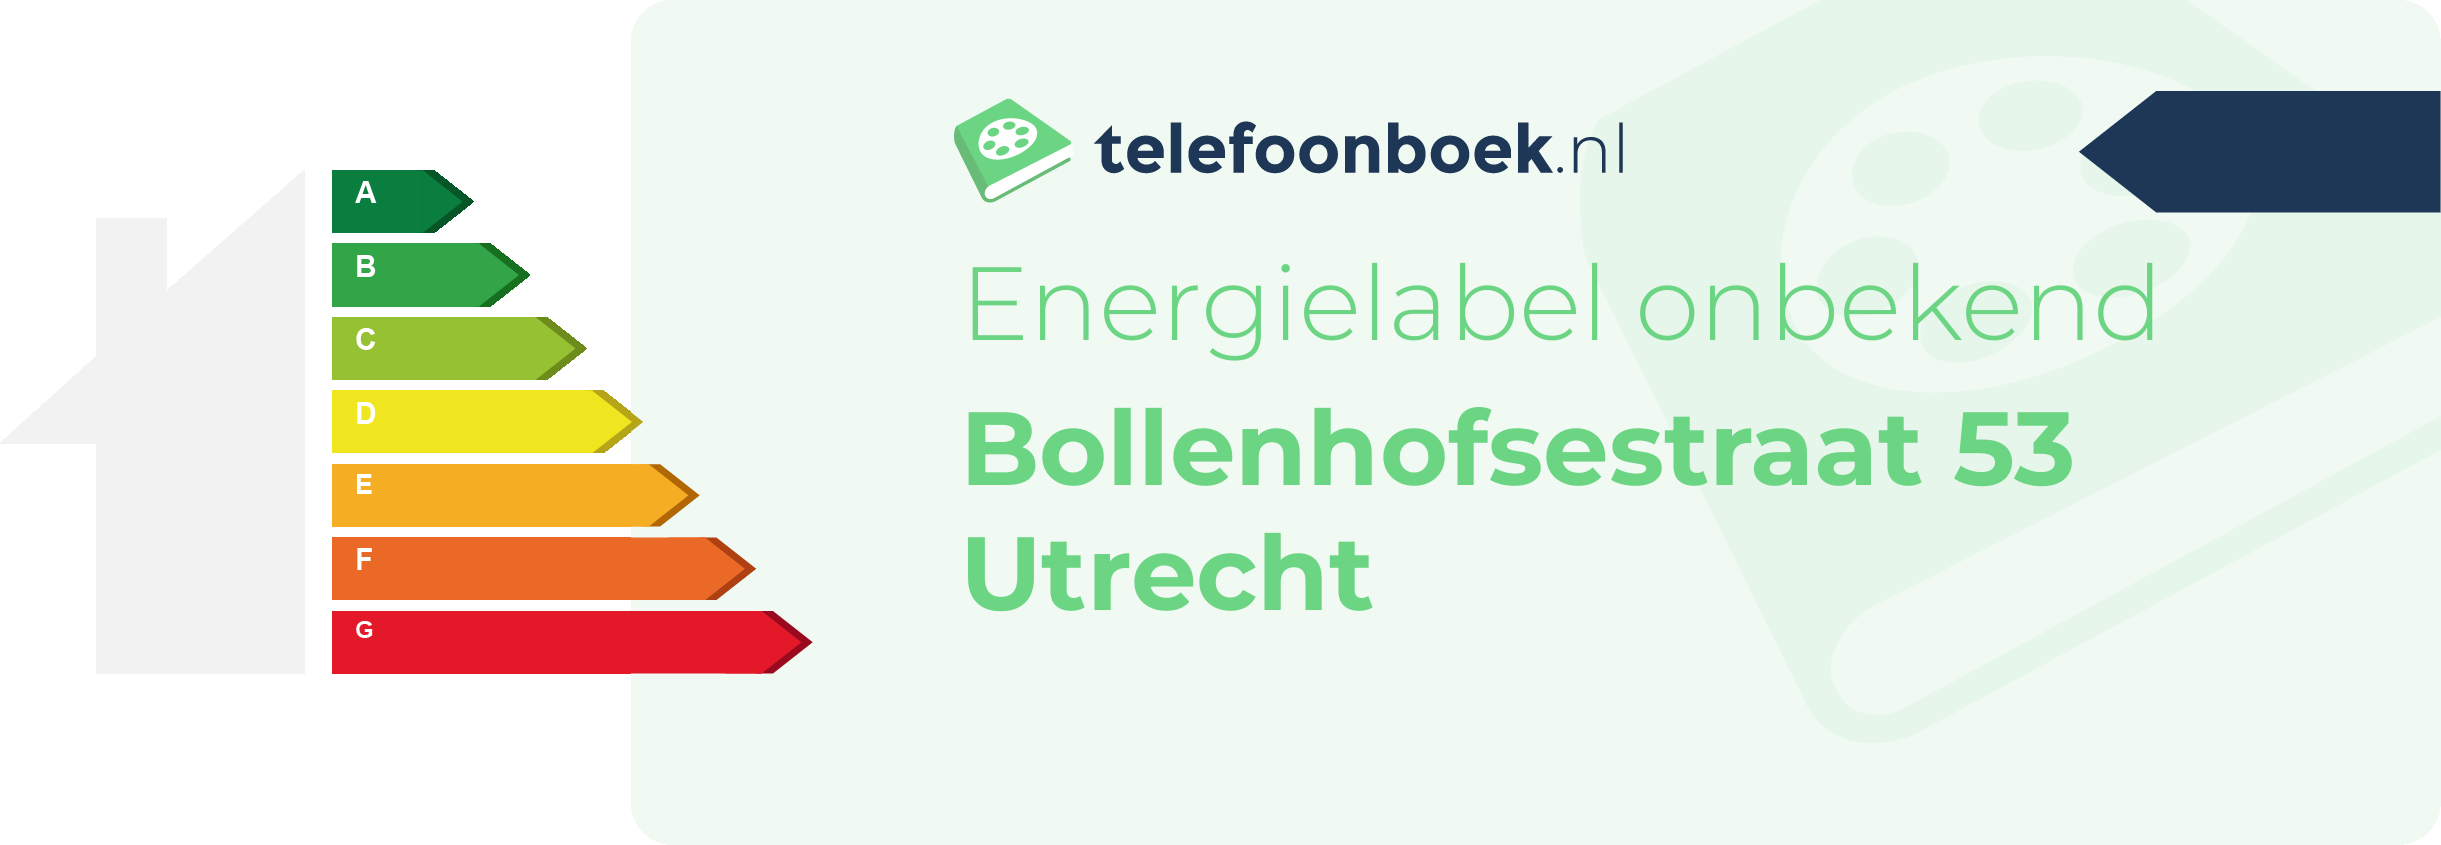 Energielabel Bollenhofsestraat 53 Utrecht